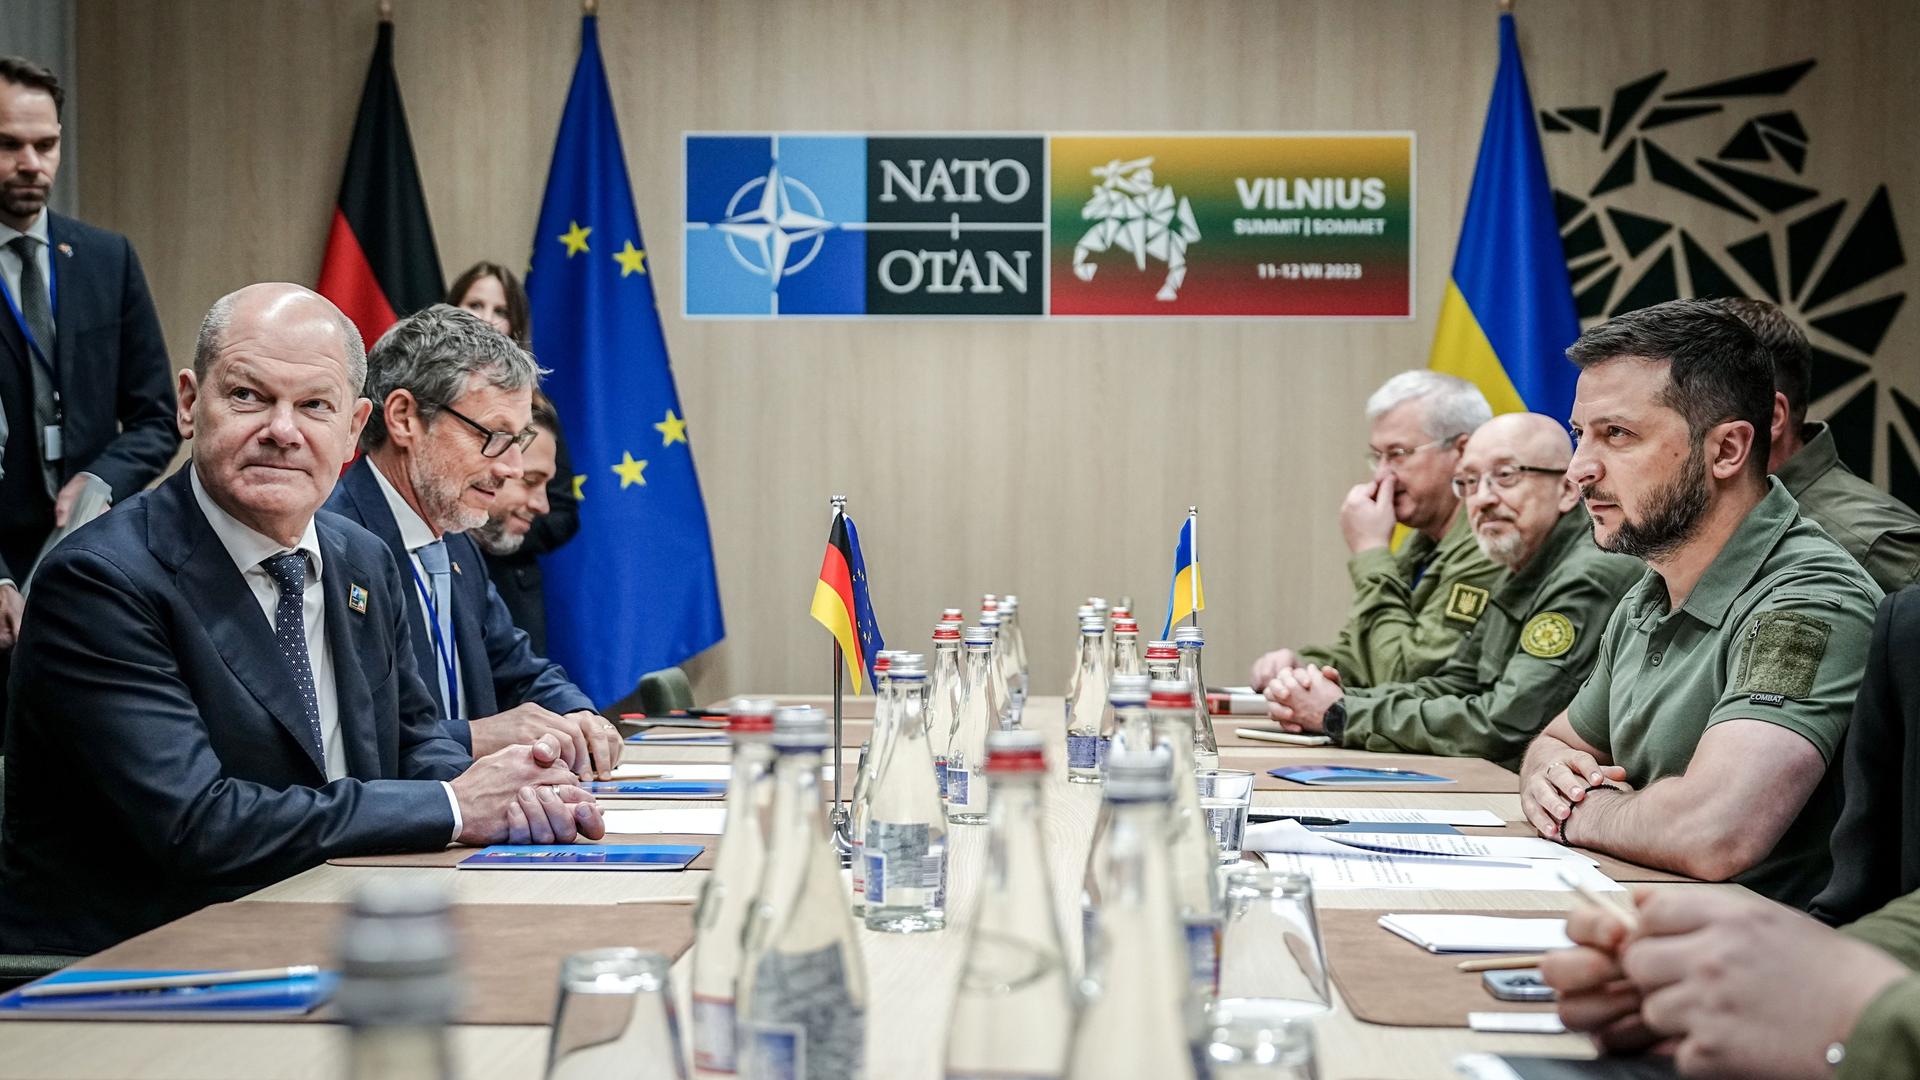 Litauen, Vilnius: Bundeskanzler Olaf Scholz (SPD) und Wolodymyr Selenskyj, Präsident der Ukraine, treffen sich am Rande des Nato-Gipfels zu einem bilateralen Gespräch. 